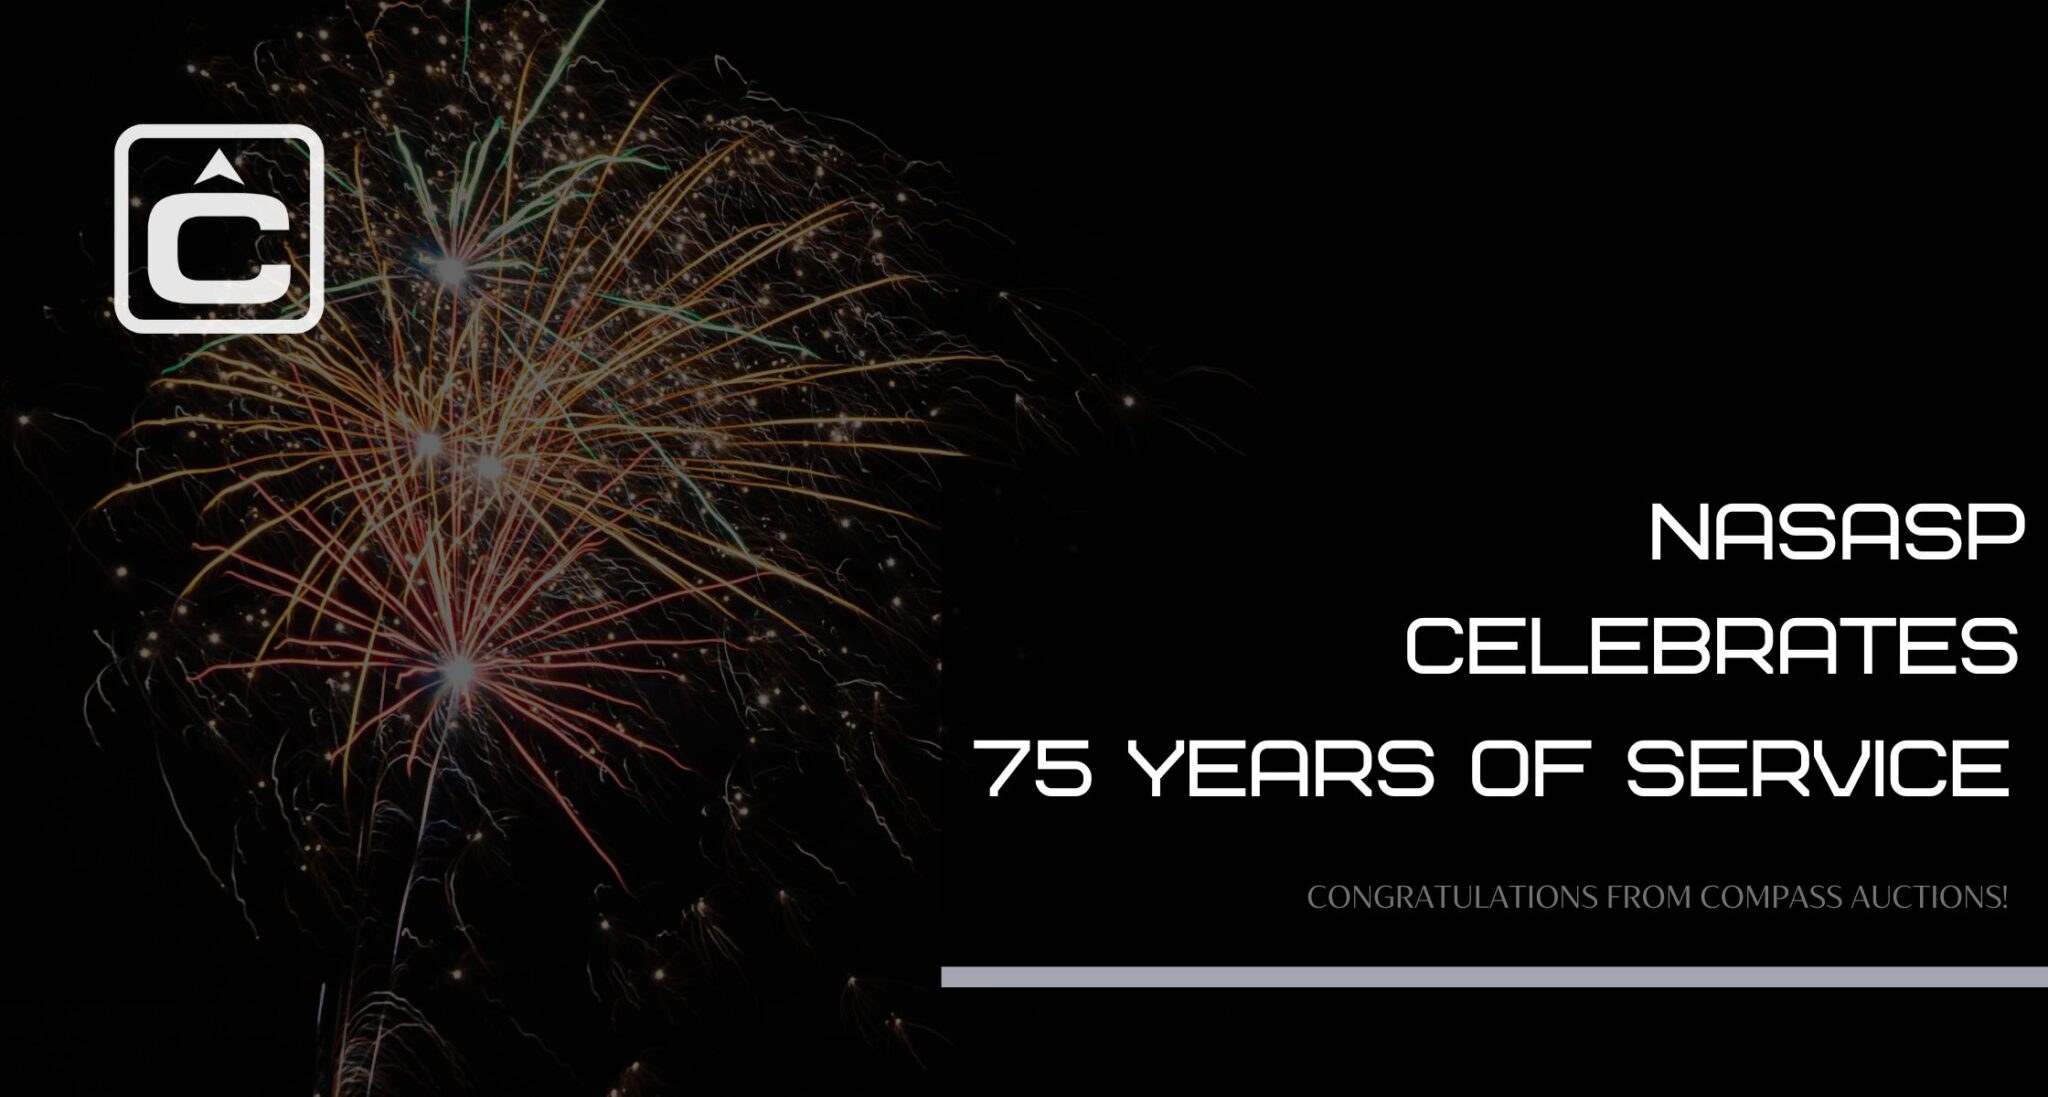 NASASP-Celebrates-75-Years-of-Service-scaled.